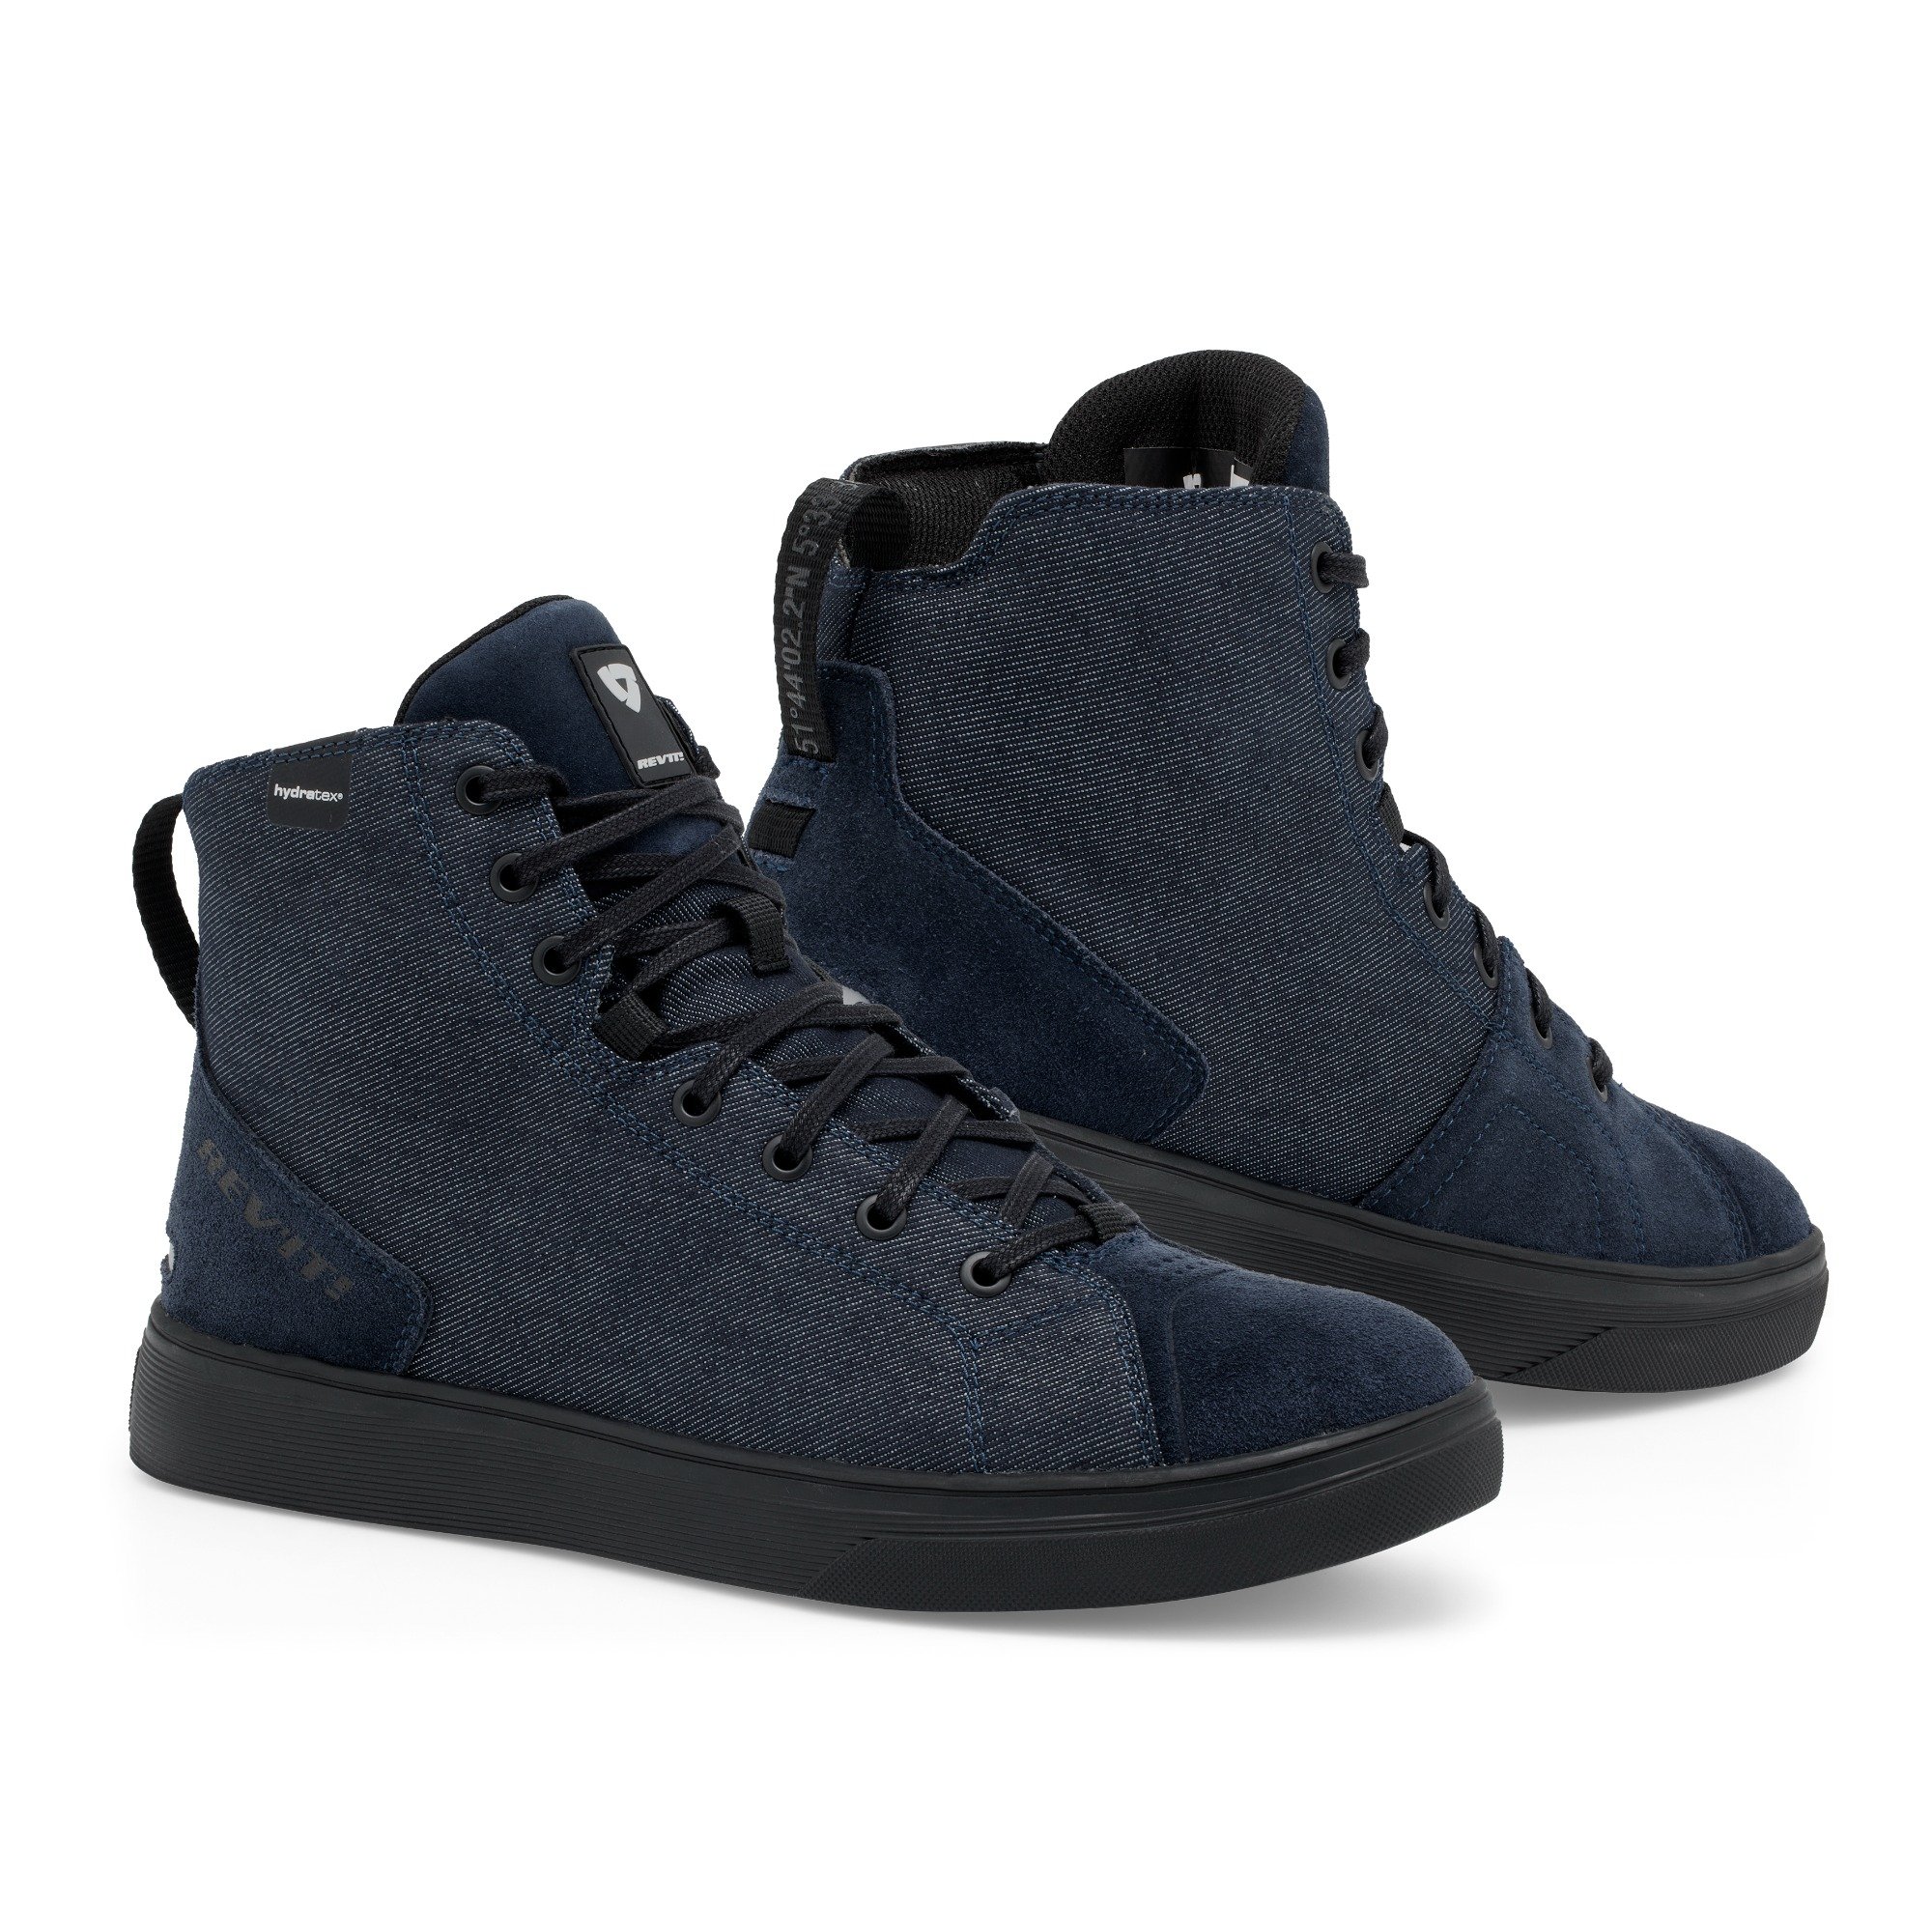 Image of REV'IT! Delta H2O Shoes Dark Blue Black Size 47 EN